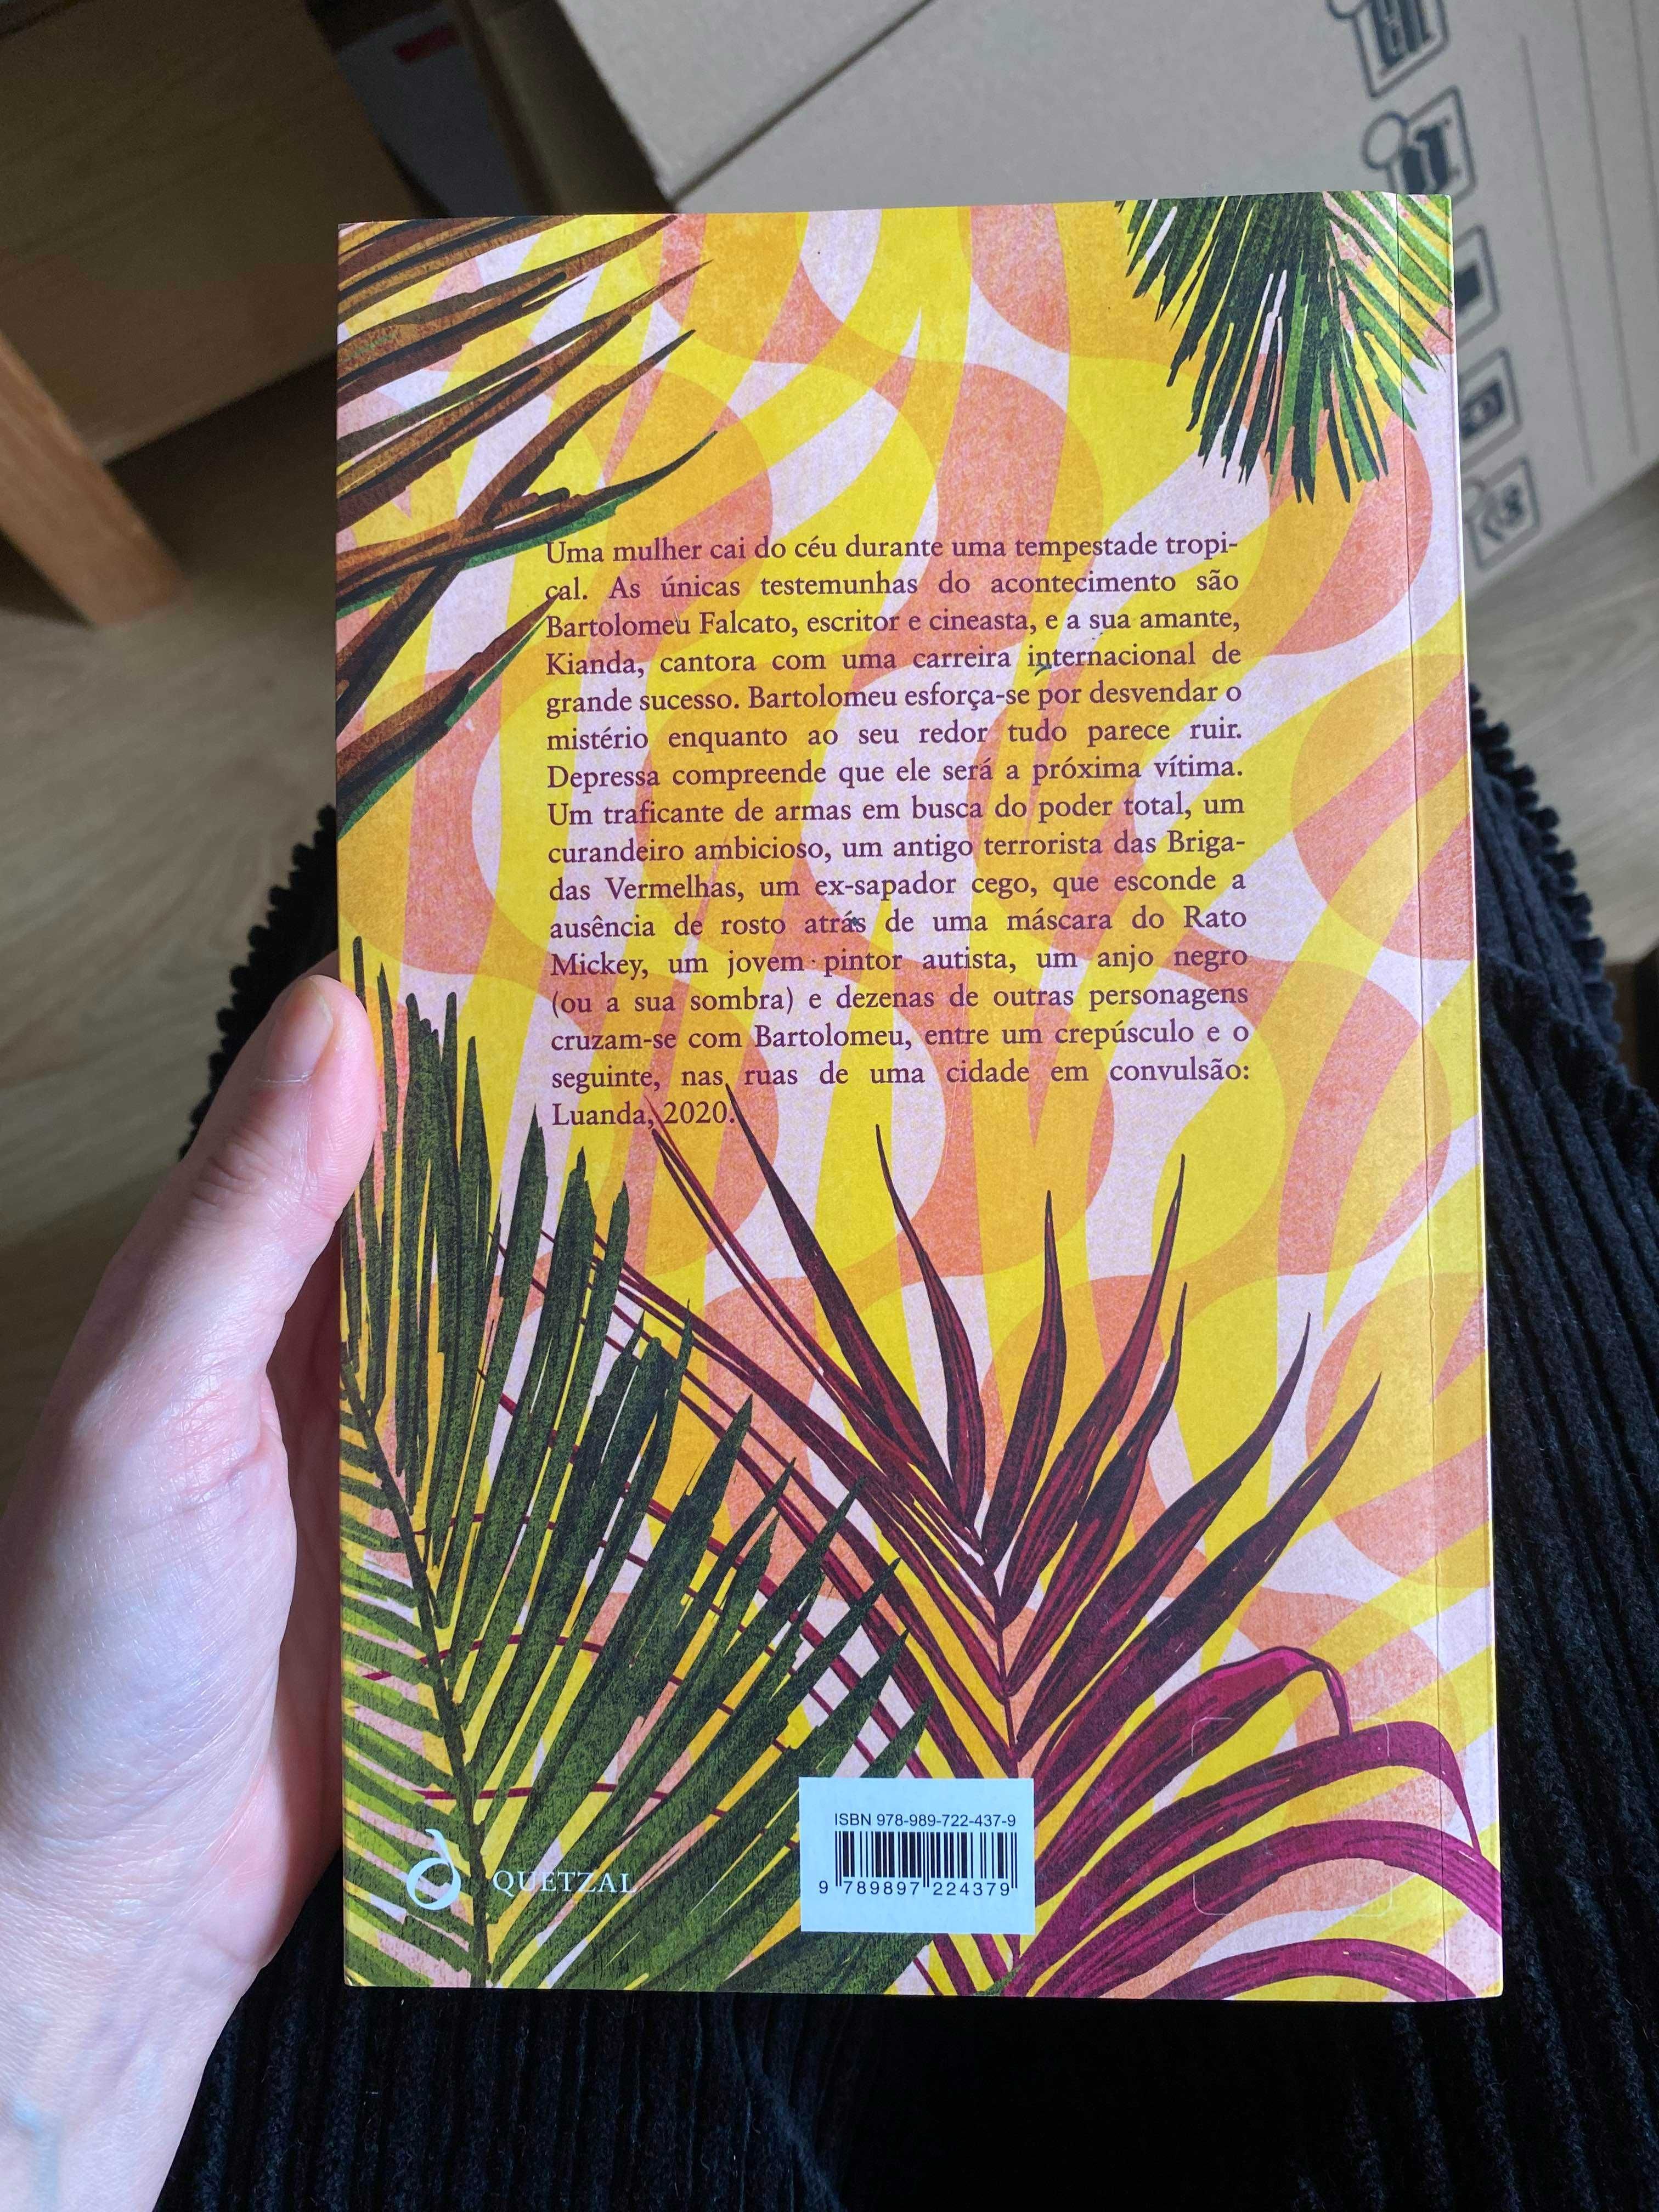 Livro "Barroco Tropical", de José Eduardo Agualusa